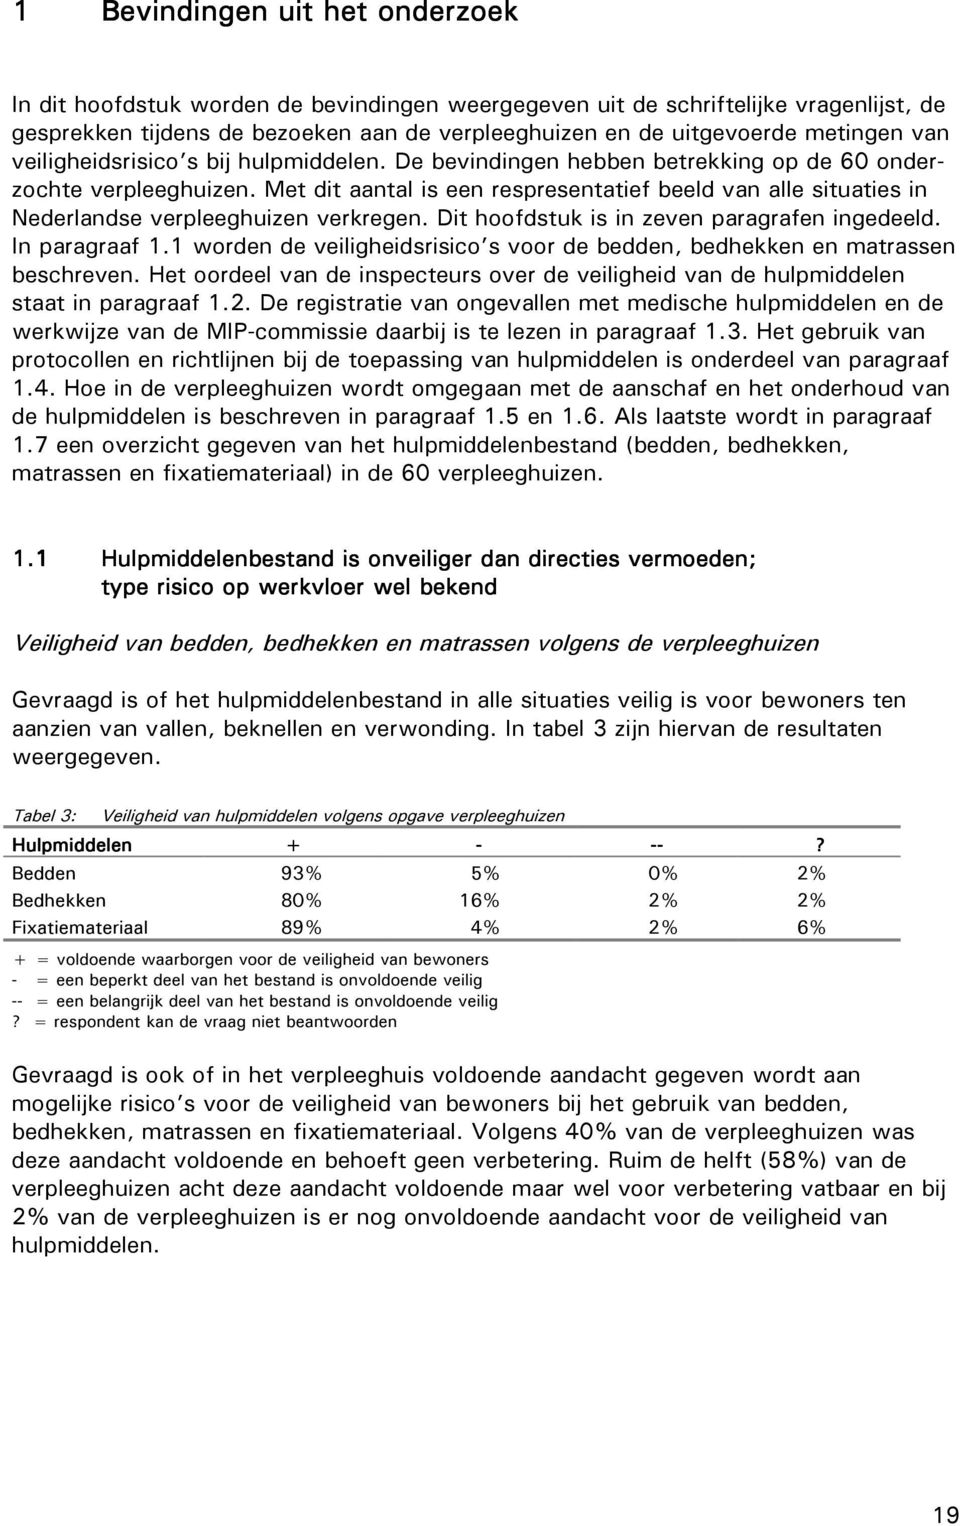 Met dit aantal is een respresentatief beeld van alle situaties in Nederlandse verpleeghuizen verkregen. Dit hoofdstuk is in zeven paragrafen ingedeeld. In paragraaf 1.